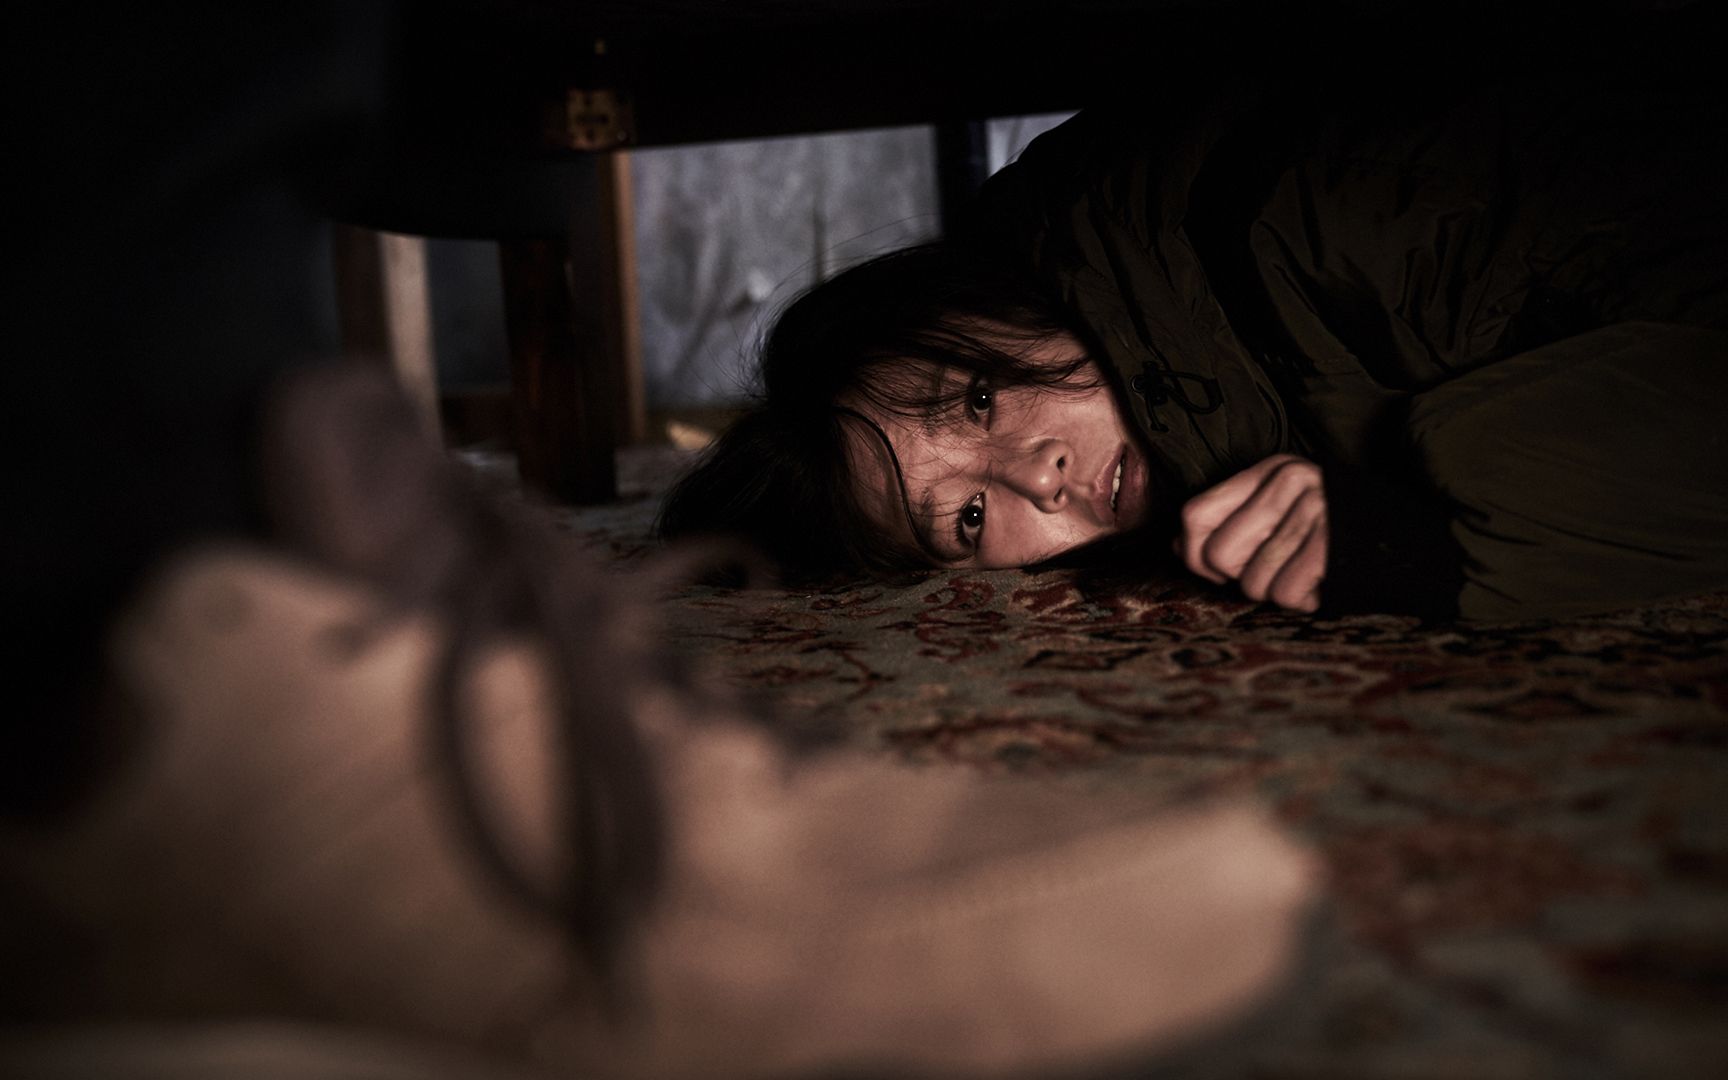 独居女孩熟睡,床下却爬出变态跟踪狂,韩国悬疑惊悚电影《门锁》